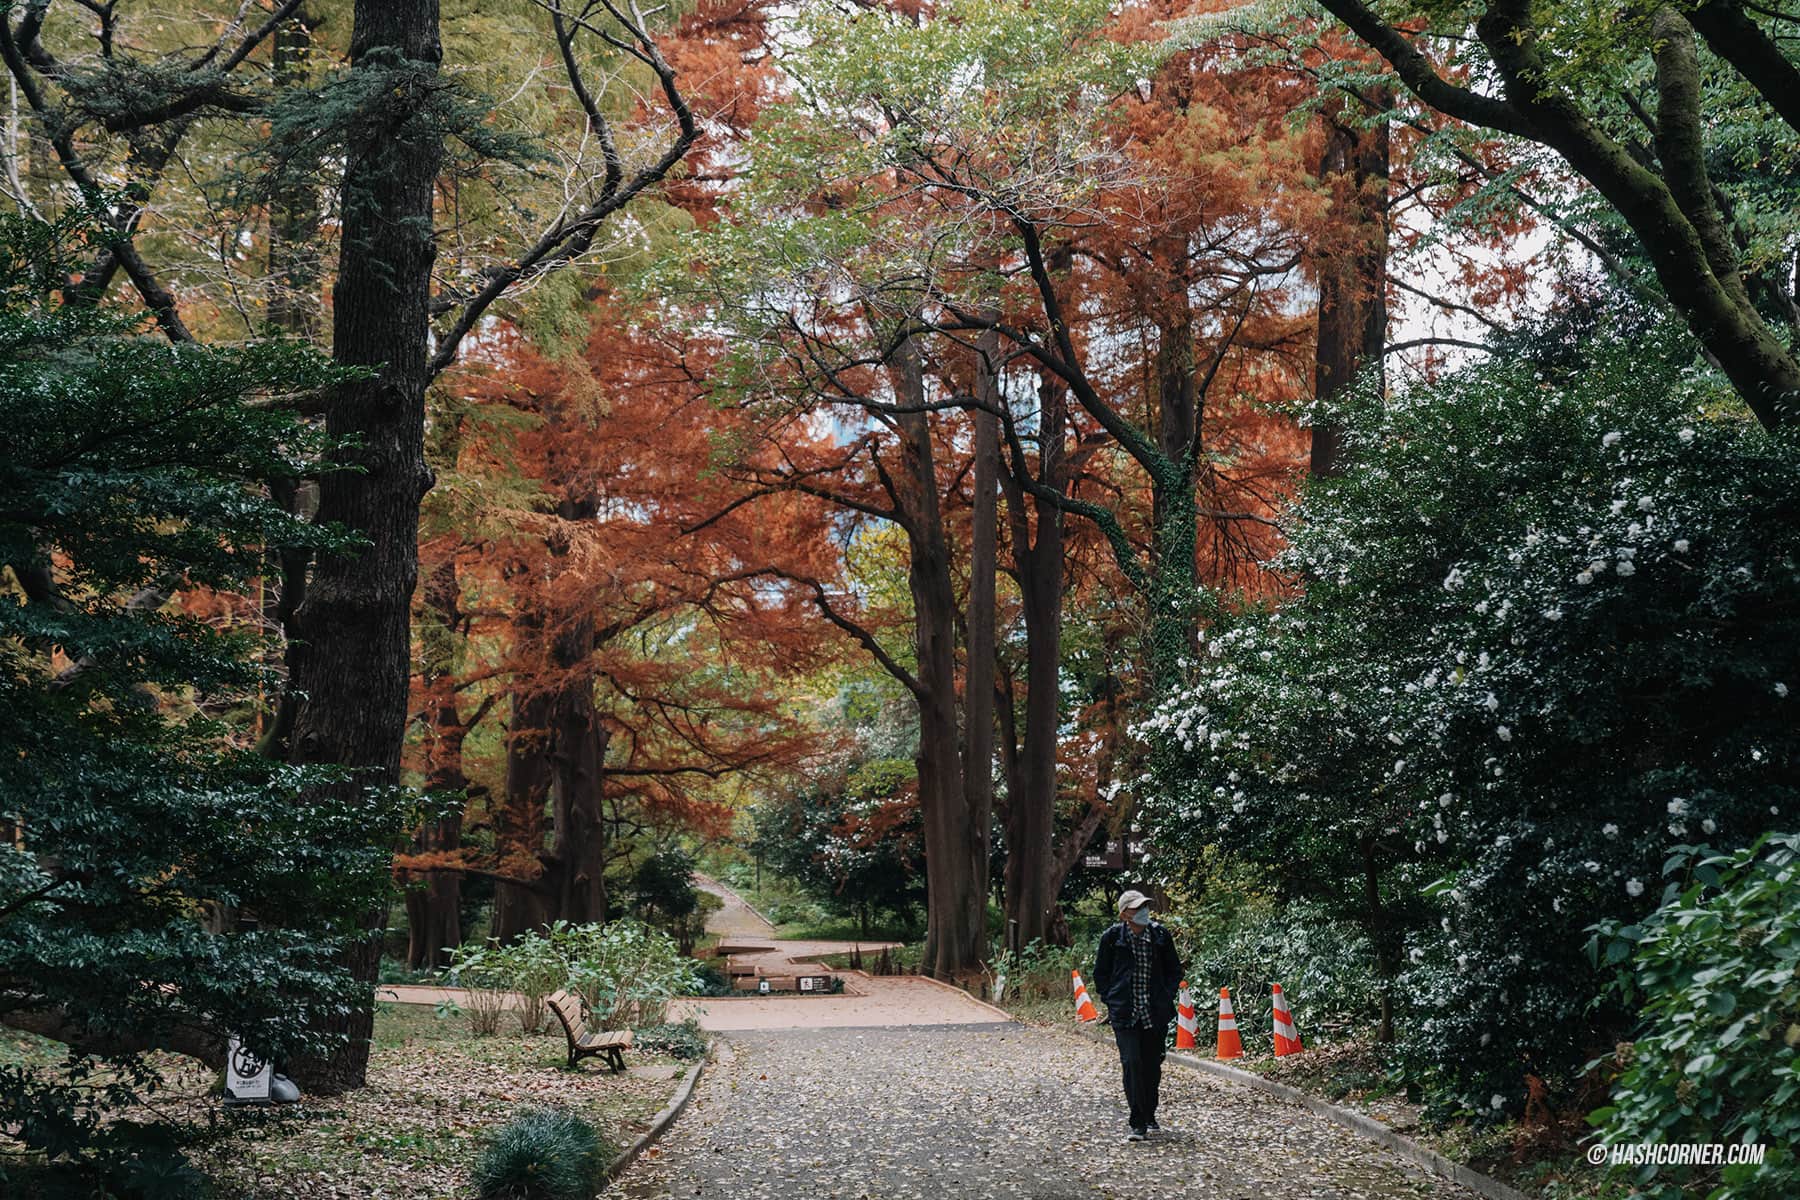 รีวิว สวนชินจูกุเกียวเอ็น (Shinjuku Gyoen) x โตเกียว เที่ยวปล่อยใจไปกับธรรมชาติ